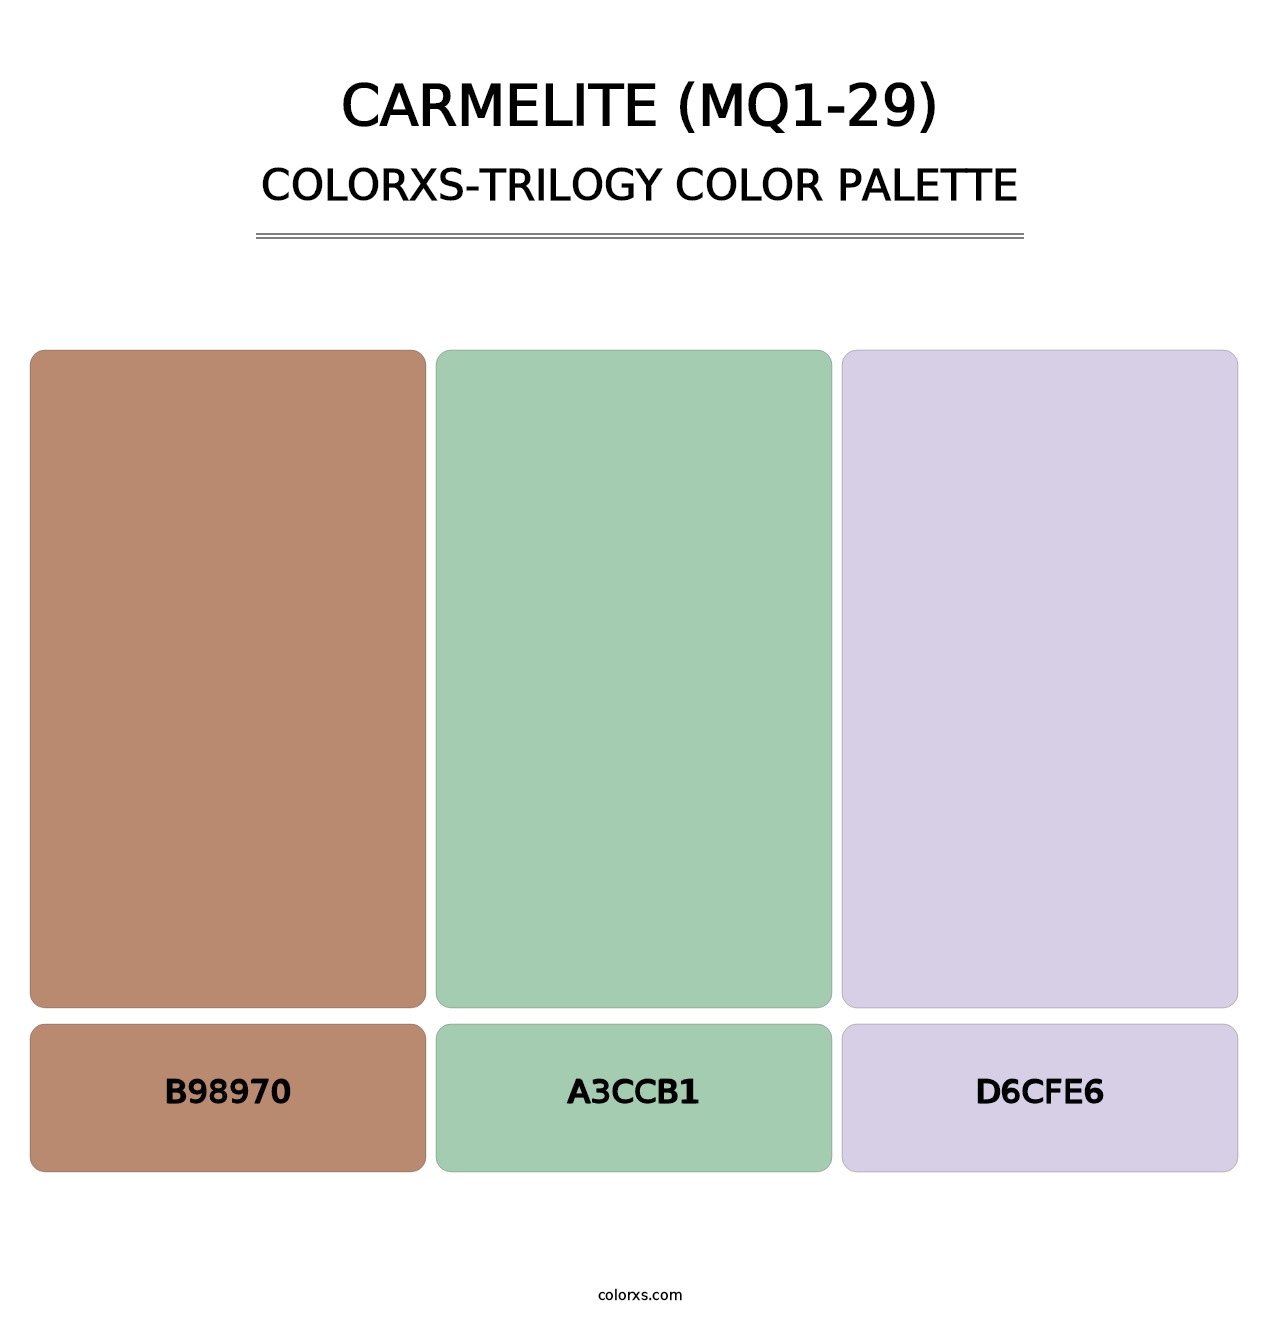 Carmelite (MQ1-29) - Colorxs Trilogy Palette